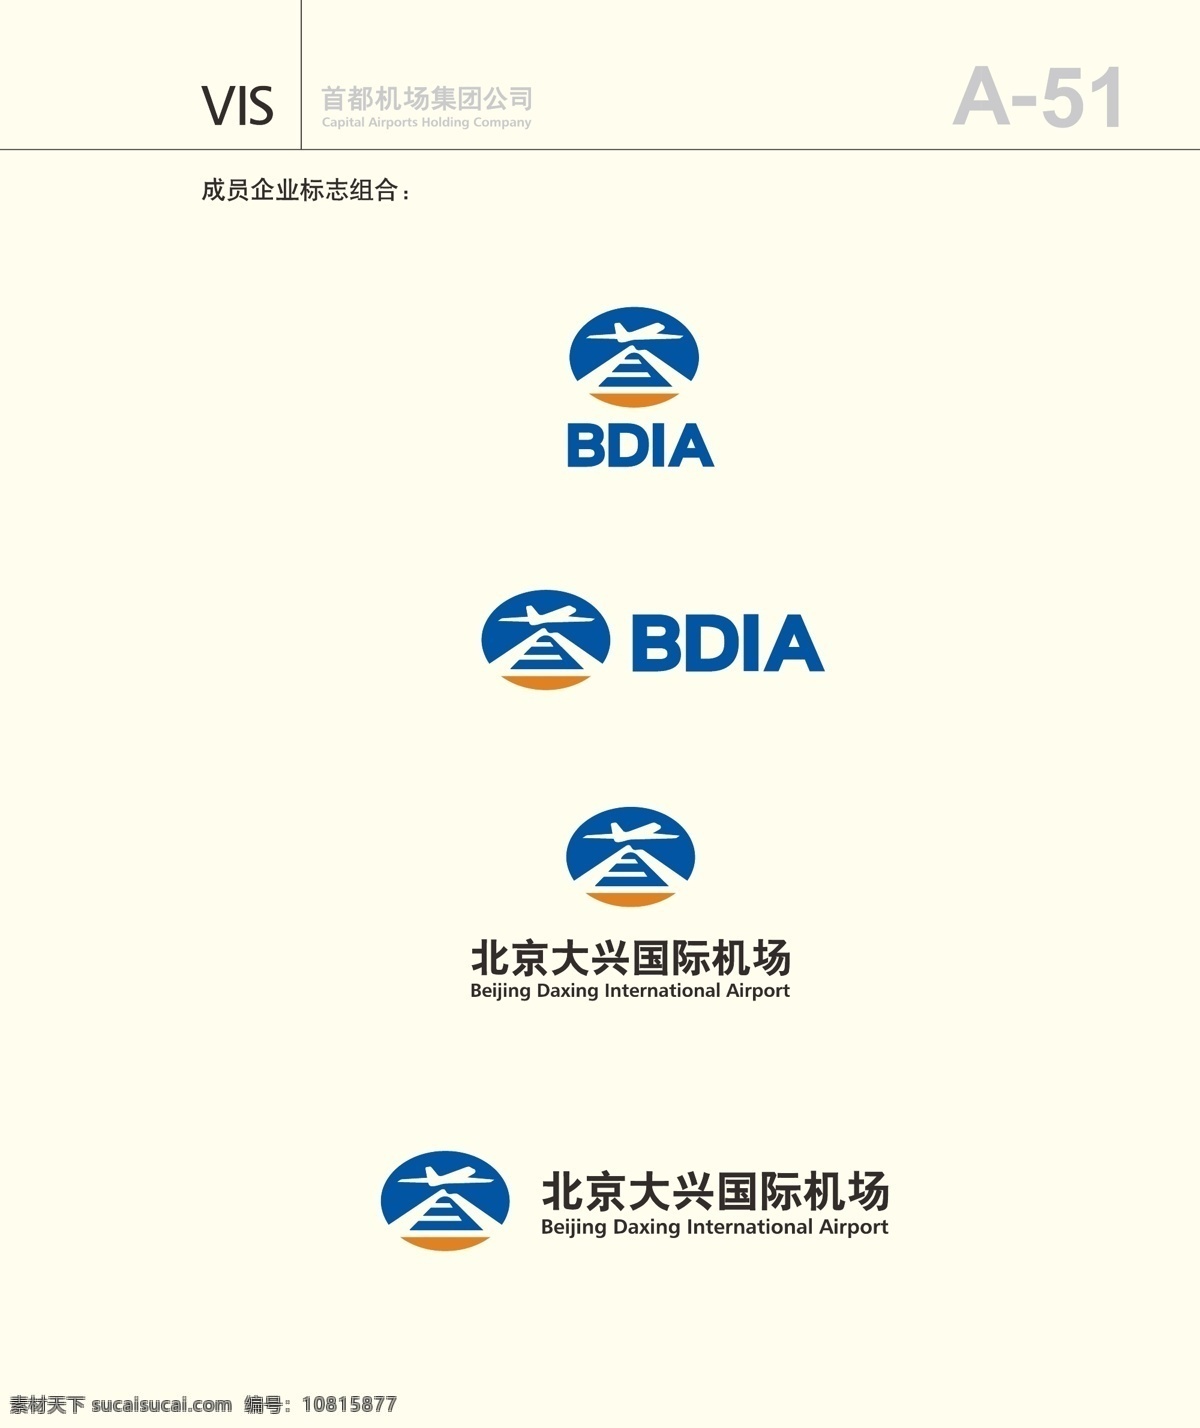 北京 大兴 国际机场 机场 飞行 飞机 天啊 标志图标 公共标识标志